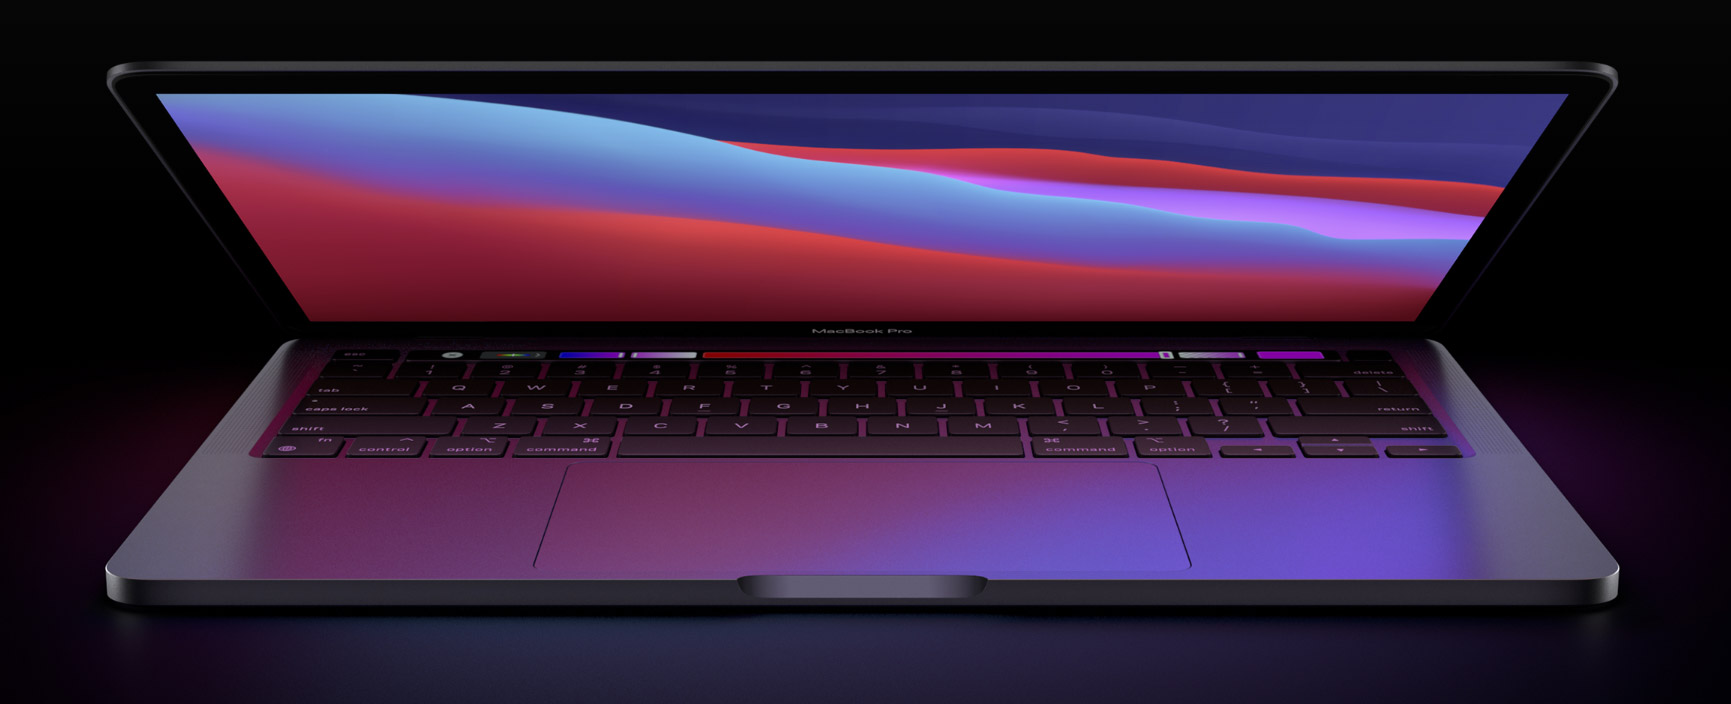 MacBook Pro 13,3 pulgadas de 2020 con Apple Silicon M1